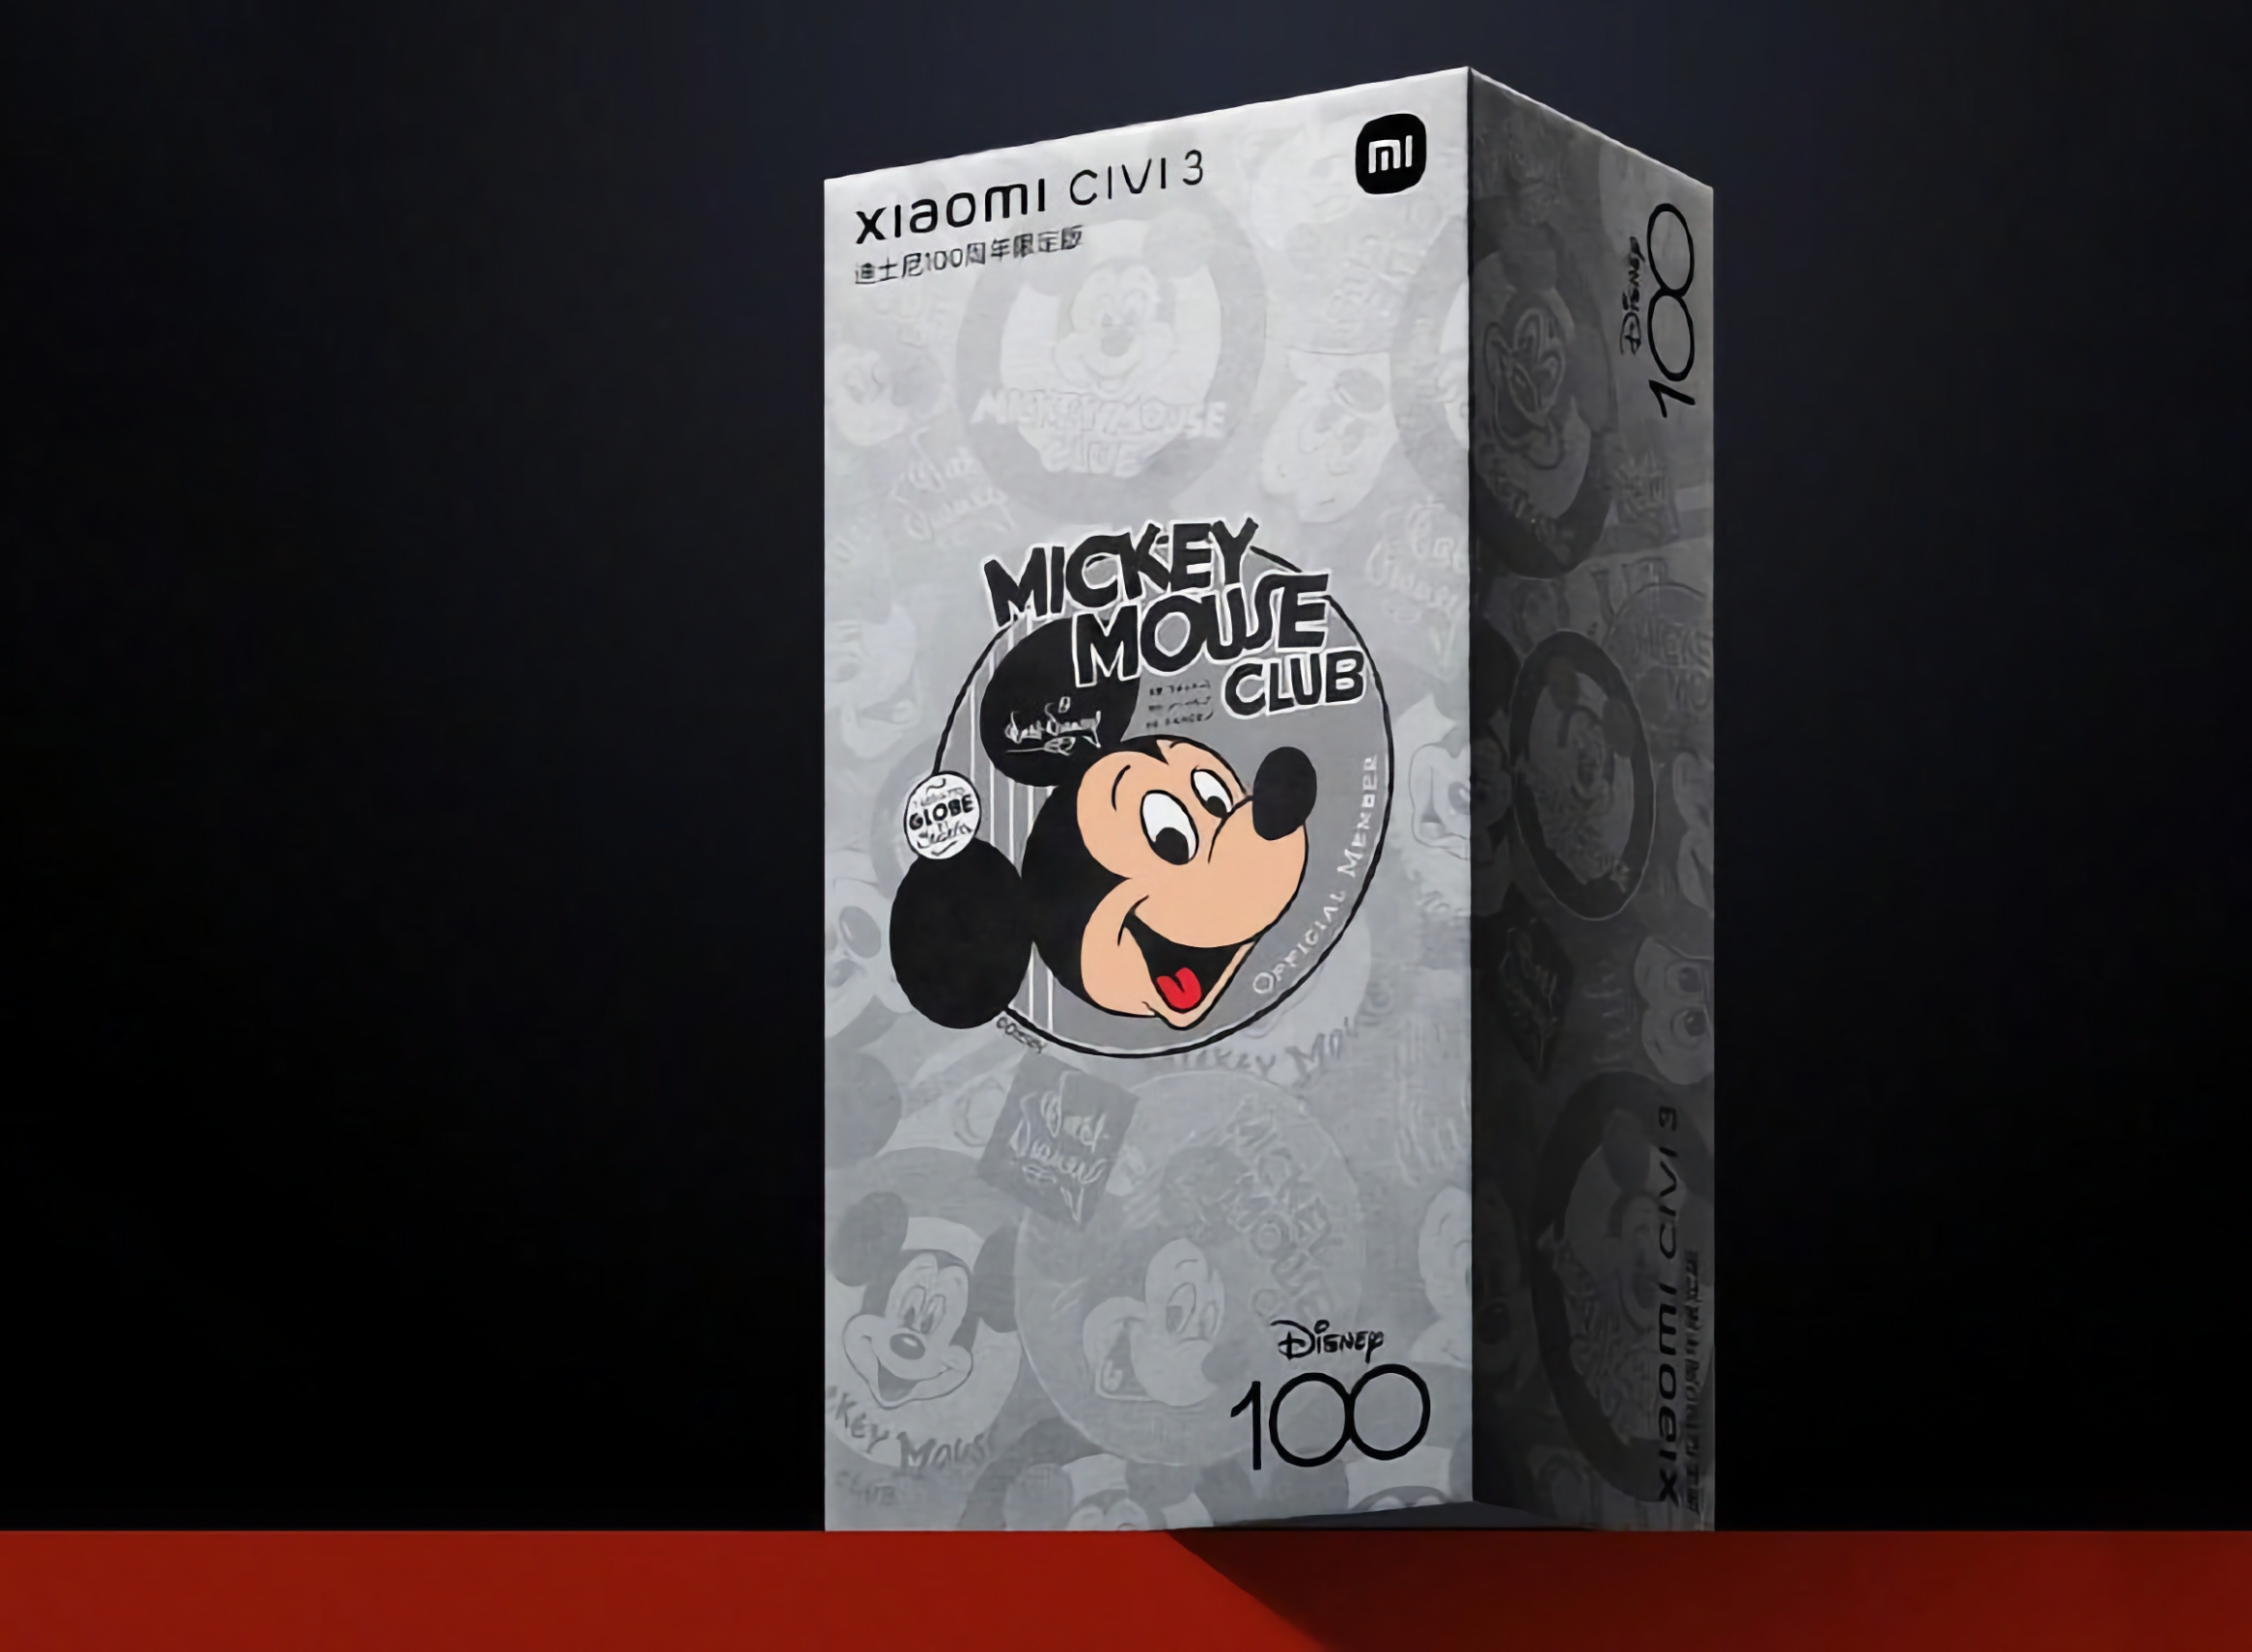 Xiaomi dévoilera une version spéciale du smartphone Civi 3 en juin, pour commémorer le 100e anniversaire de la Walt Disney Company